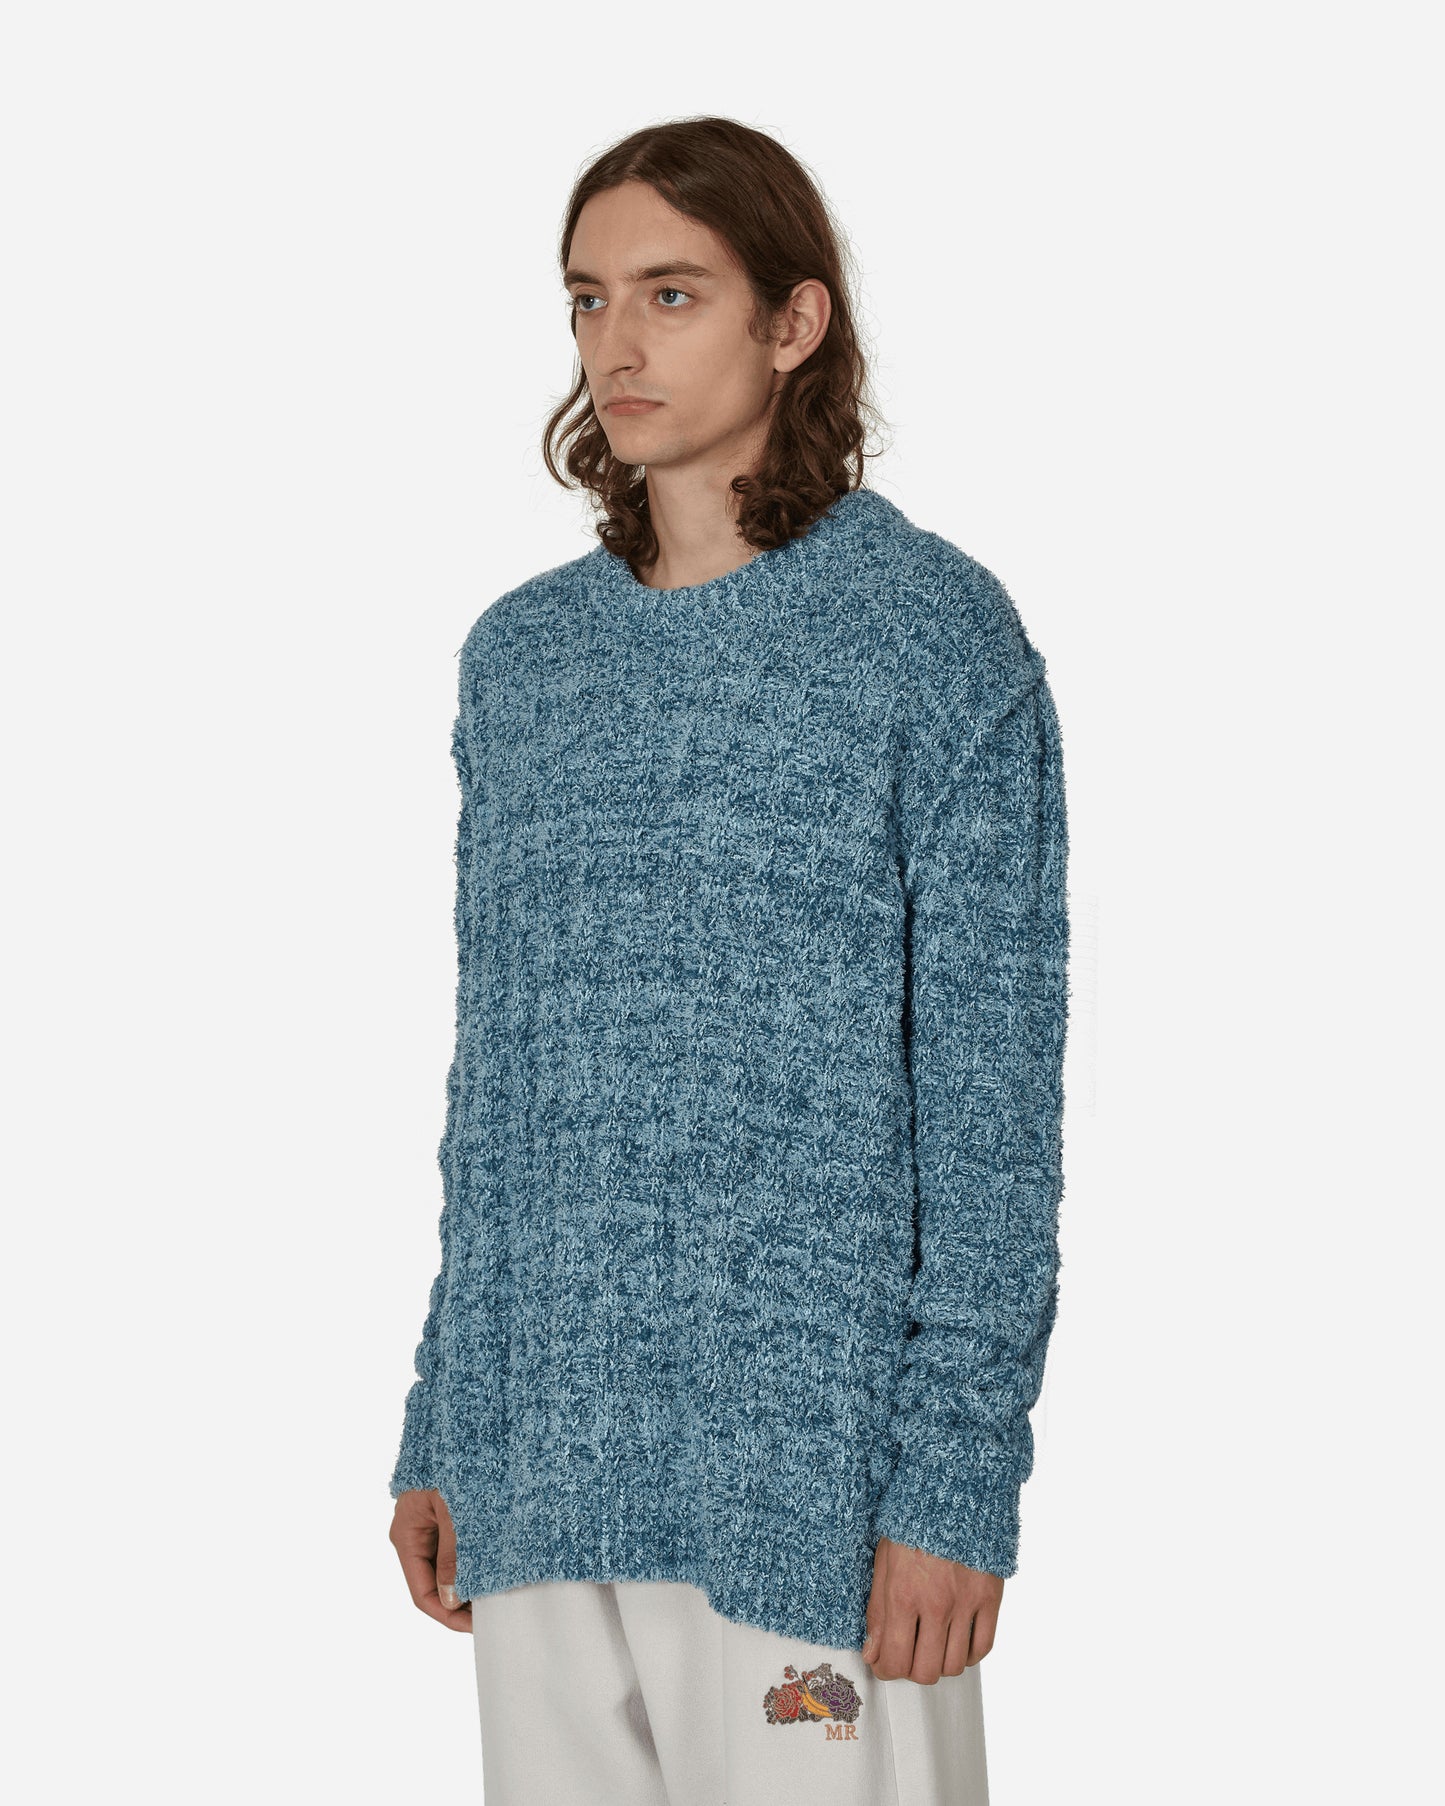 Maison Margiela Sweater Light blue Knitwears Sweaters S50GP0302 001F